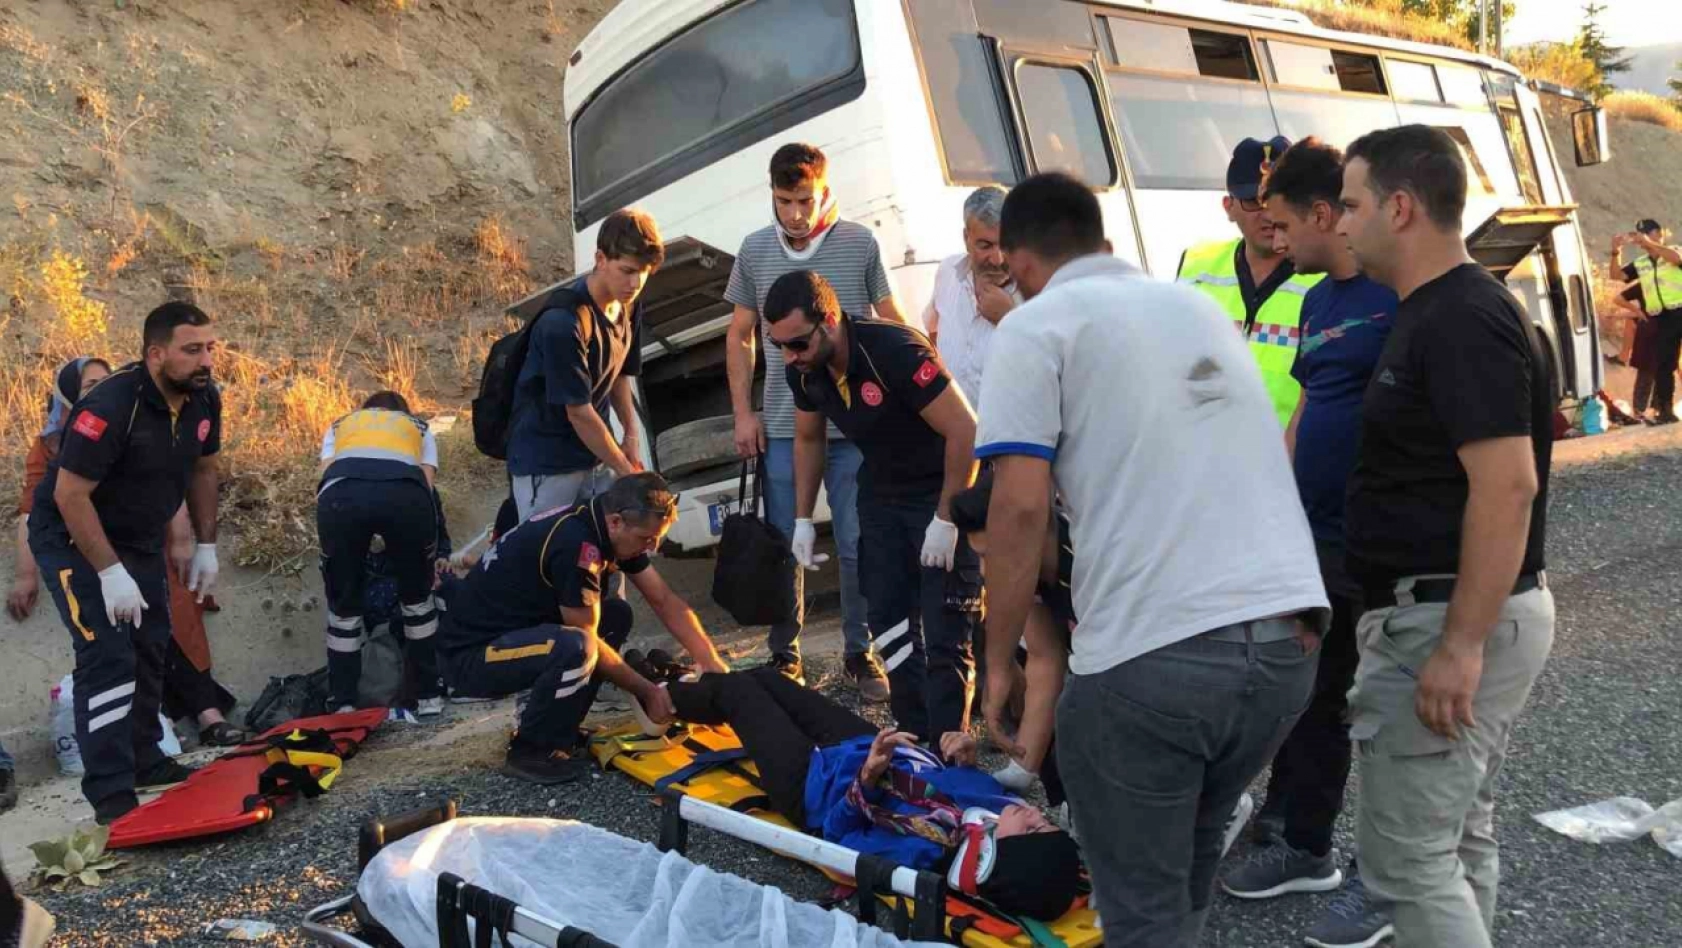 Elazığ'da tekeri patlayan midibüs su kanalına düştü: 13 yaralı